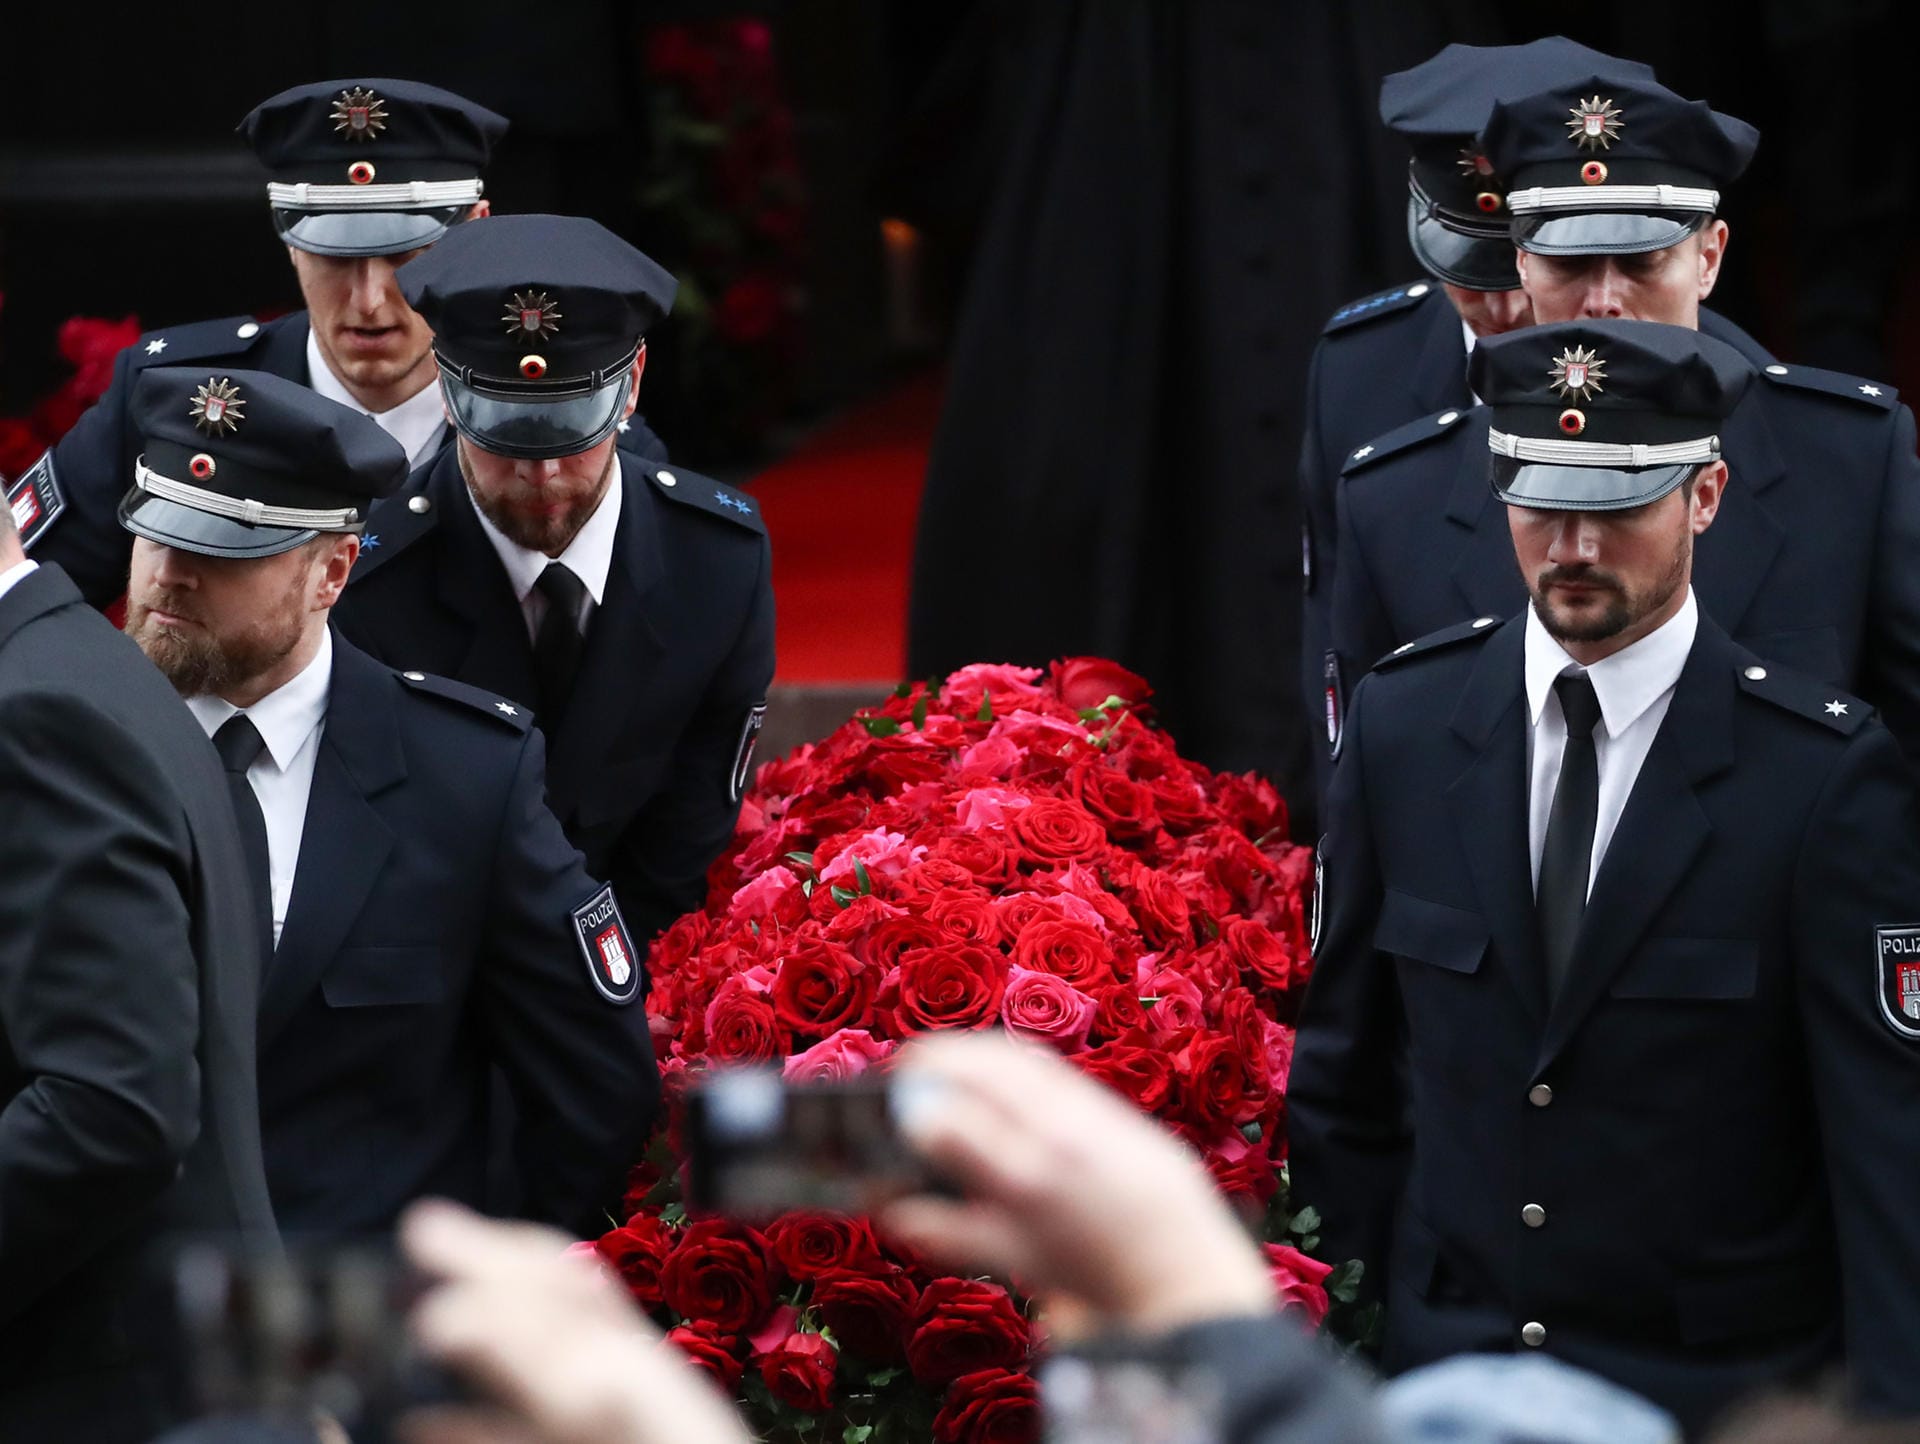 Der Sarg mit dem Leichnam des Schauspielers Jan Fedder wird nach der Trauerfeier von Polizisten aus der Kirche getragen